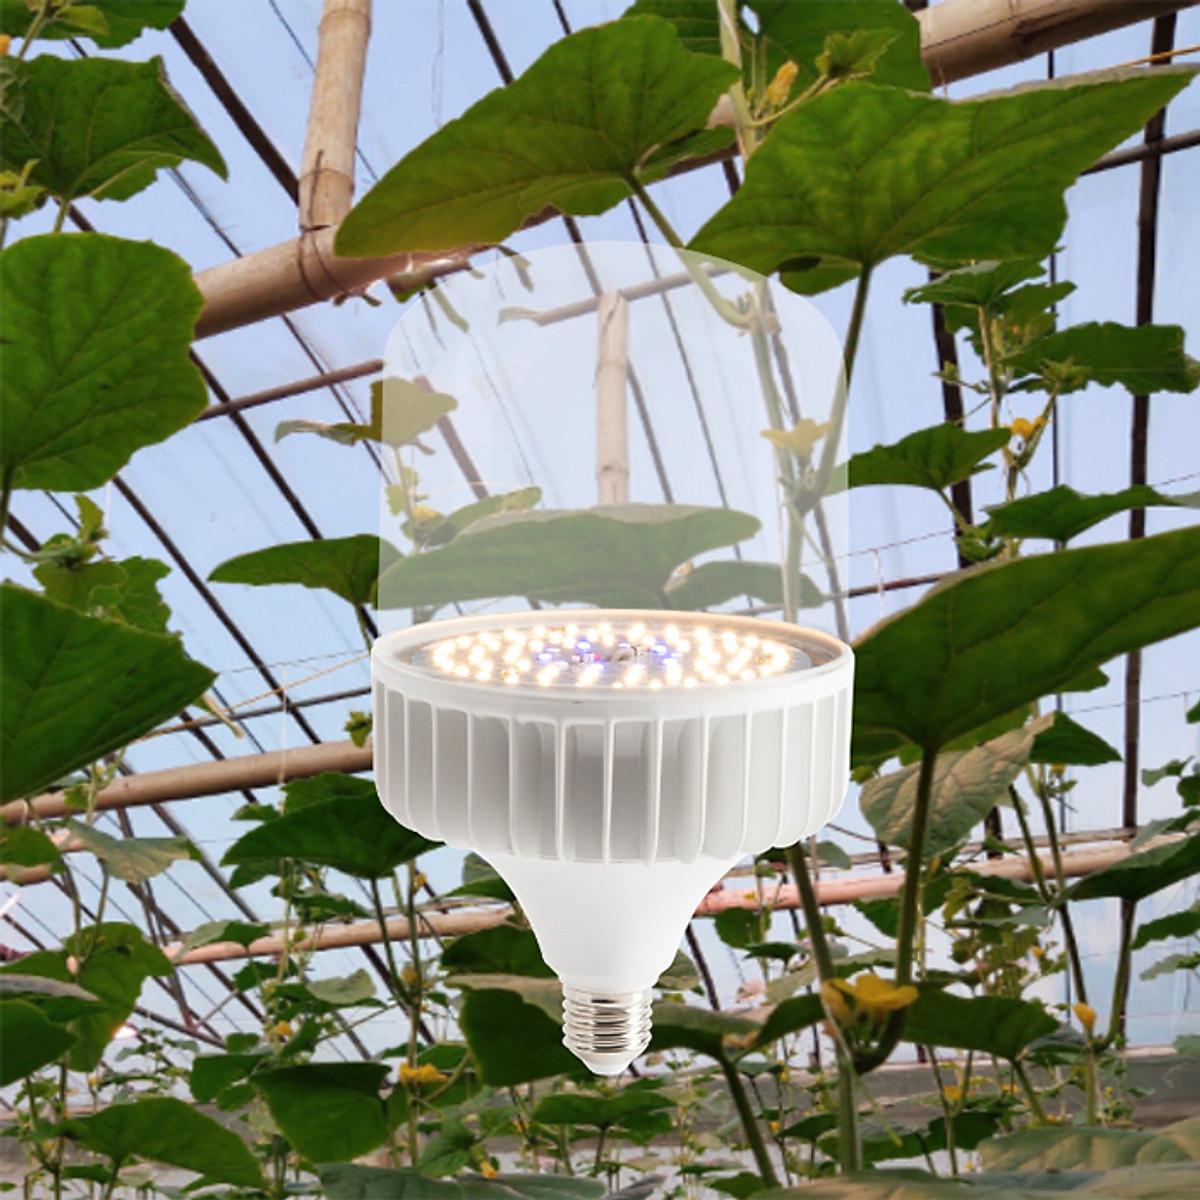 Đèn trồng cây, đèn quang hợp, vượt đông nhà lưới, nhà kính chính hãng Rạng Đông T135 WBU 50W